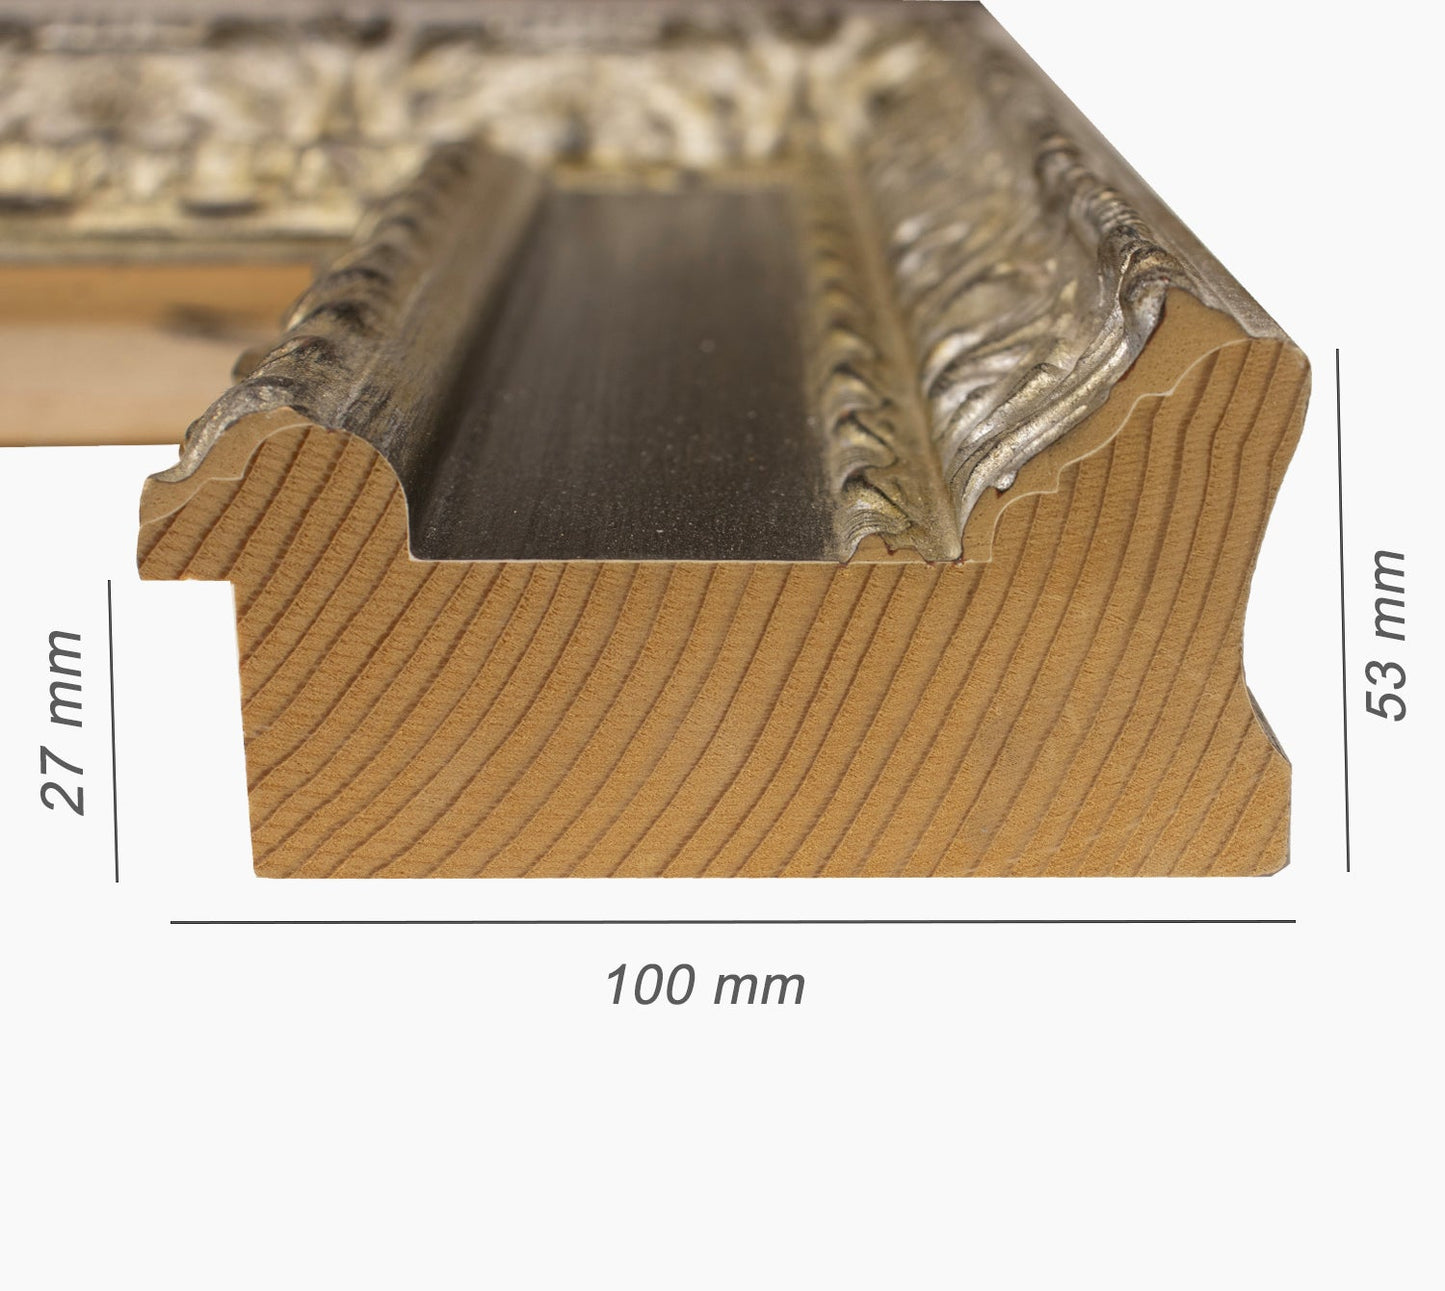 743.602 cadre en bois à la feuille d'argent avec gorge noire mesure de profil 100x53 mm Lombarda cornici S.n.c.